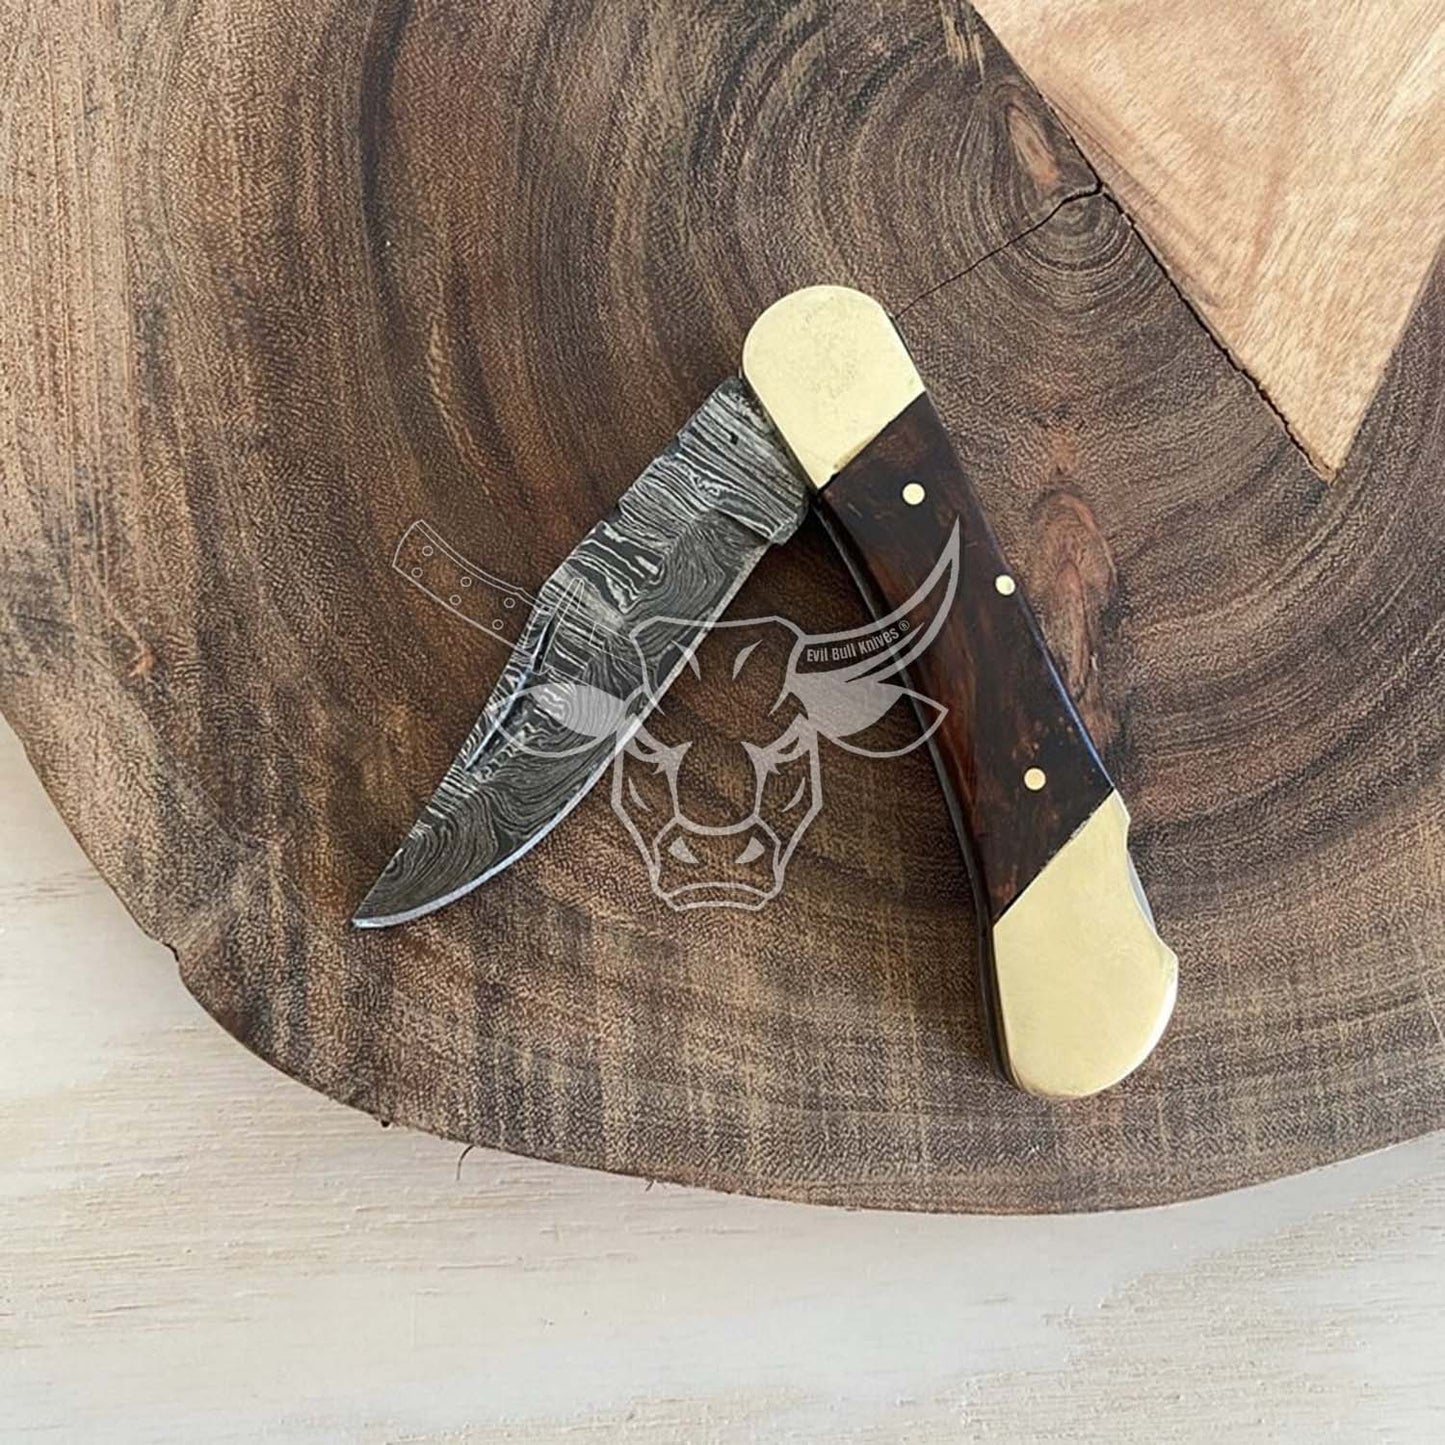 EBK-158 Custom handmade Damascus Folding Pocket Knife Everyday Carry Anniversary Gift, Birthday Gift, Christmas Gift For Him